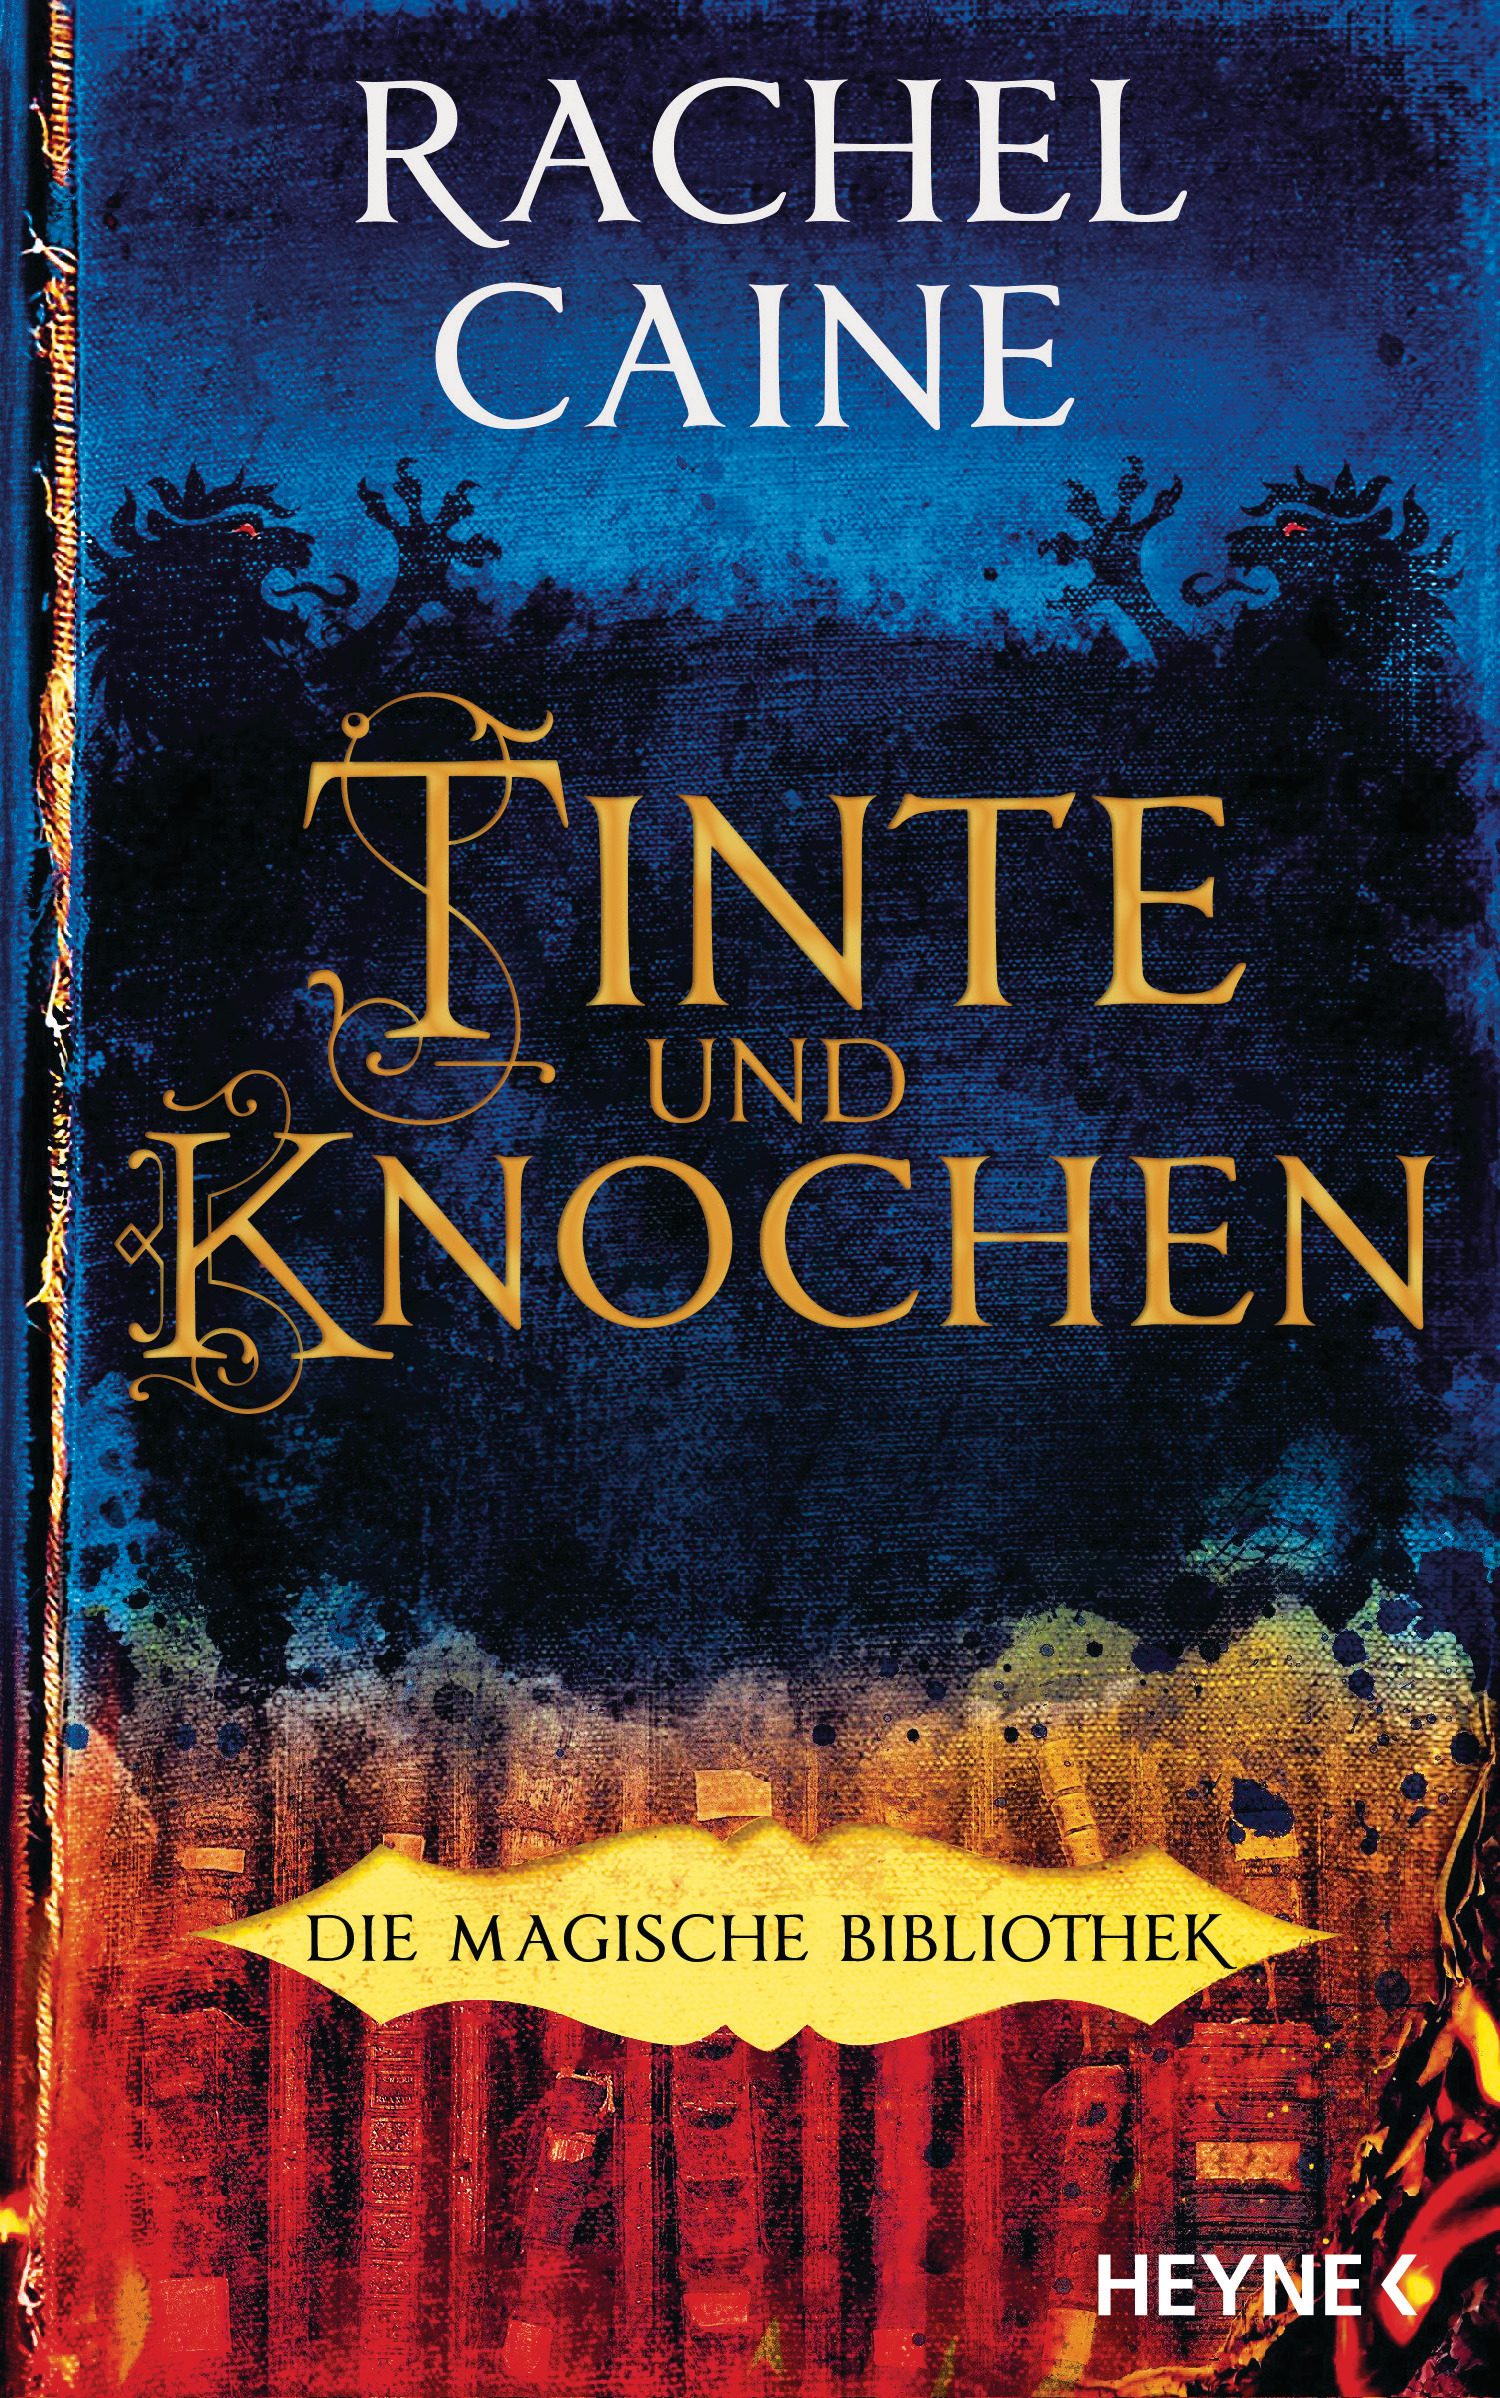 Bücherblog. Neuerscheinungen. Buchcover. Tinte und Knochen - Die Magische Bibliothek (Band 1) von Rachel Caine. Fantasy. Urban Fantasy. Heyne Verlag.